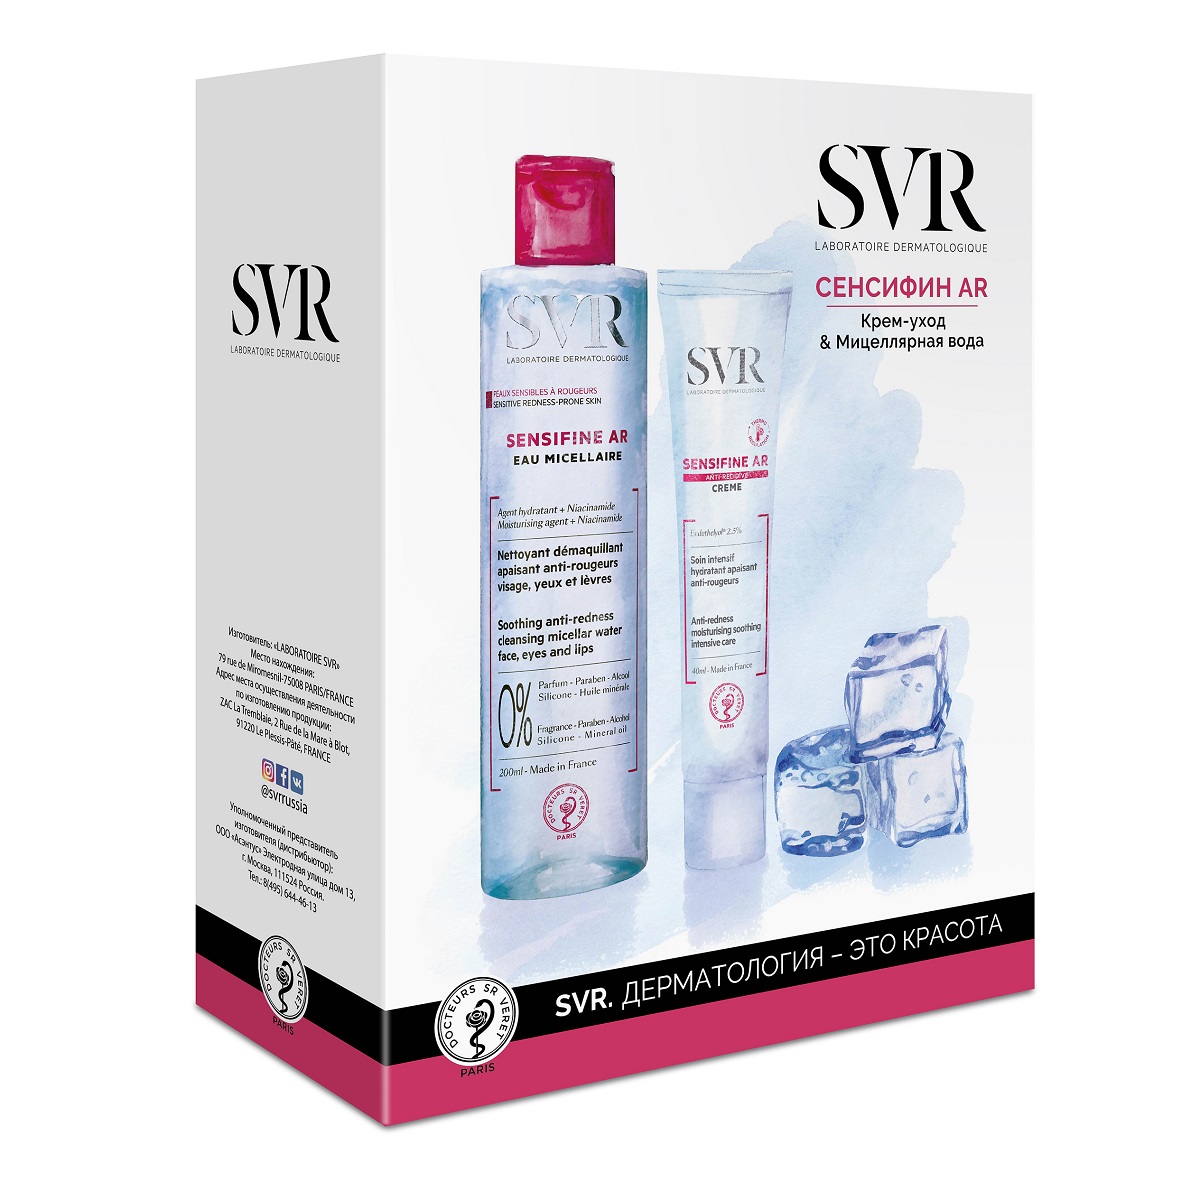 СВР Набор: Сенсифин AR крем-уход 40 мл + Сенсифин AR Мицеллярная вода 200 мл (SVR, Sensifine) фото 0